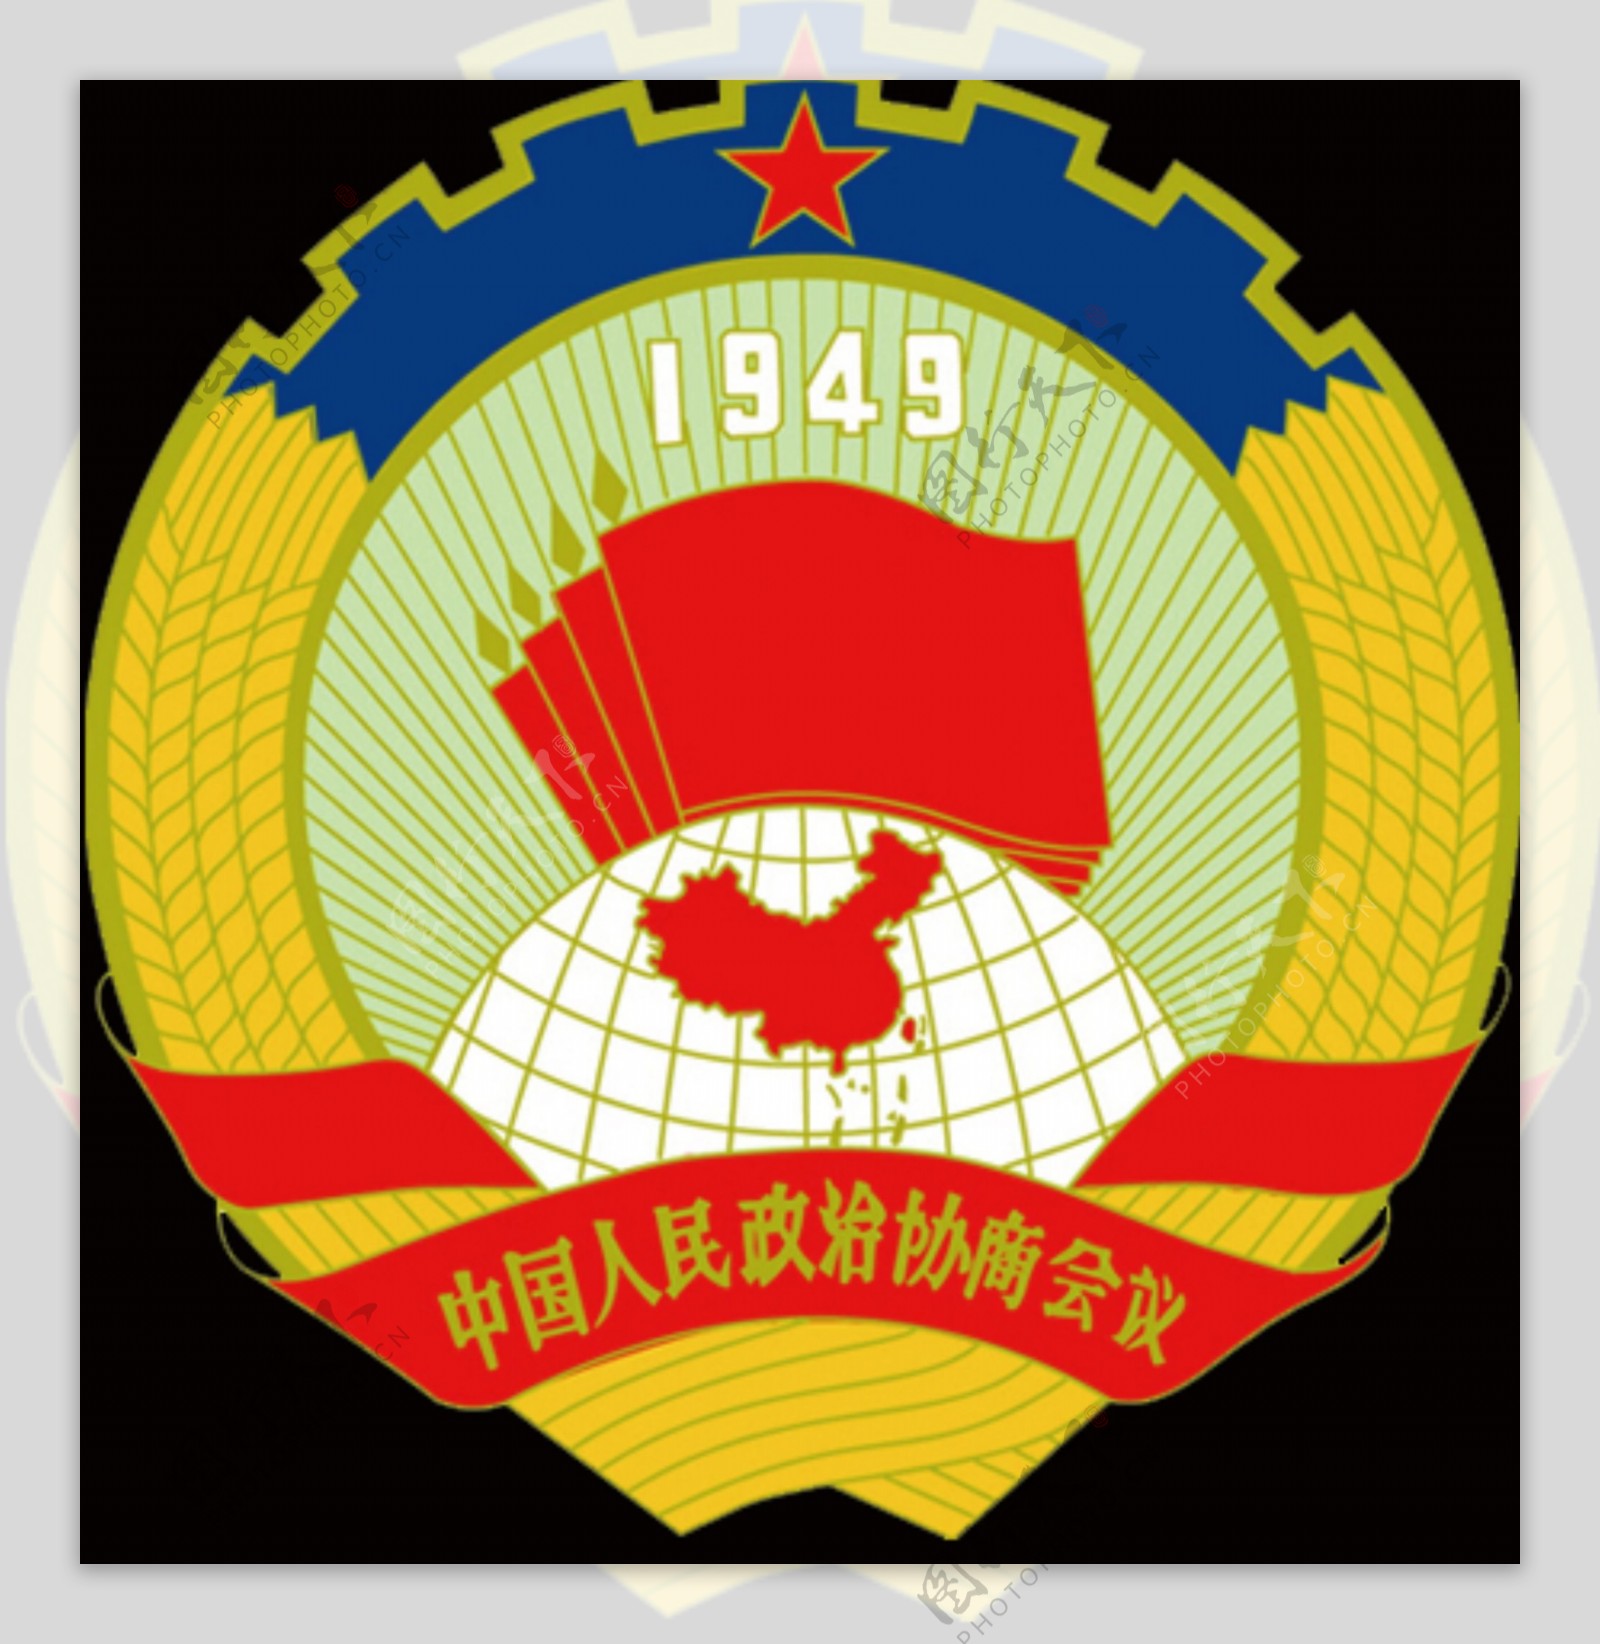 政协会徽